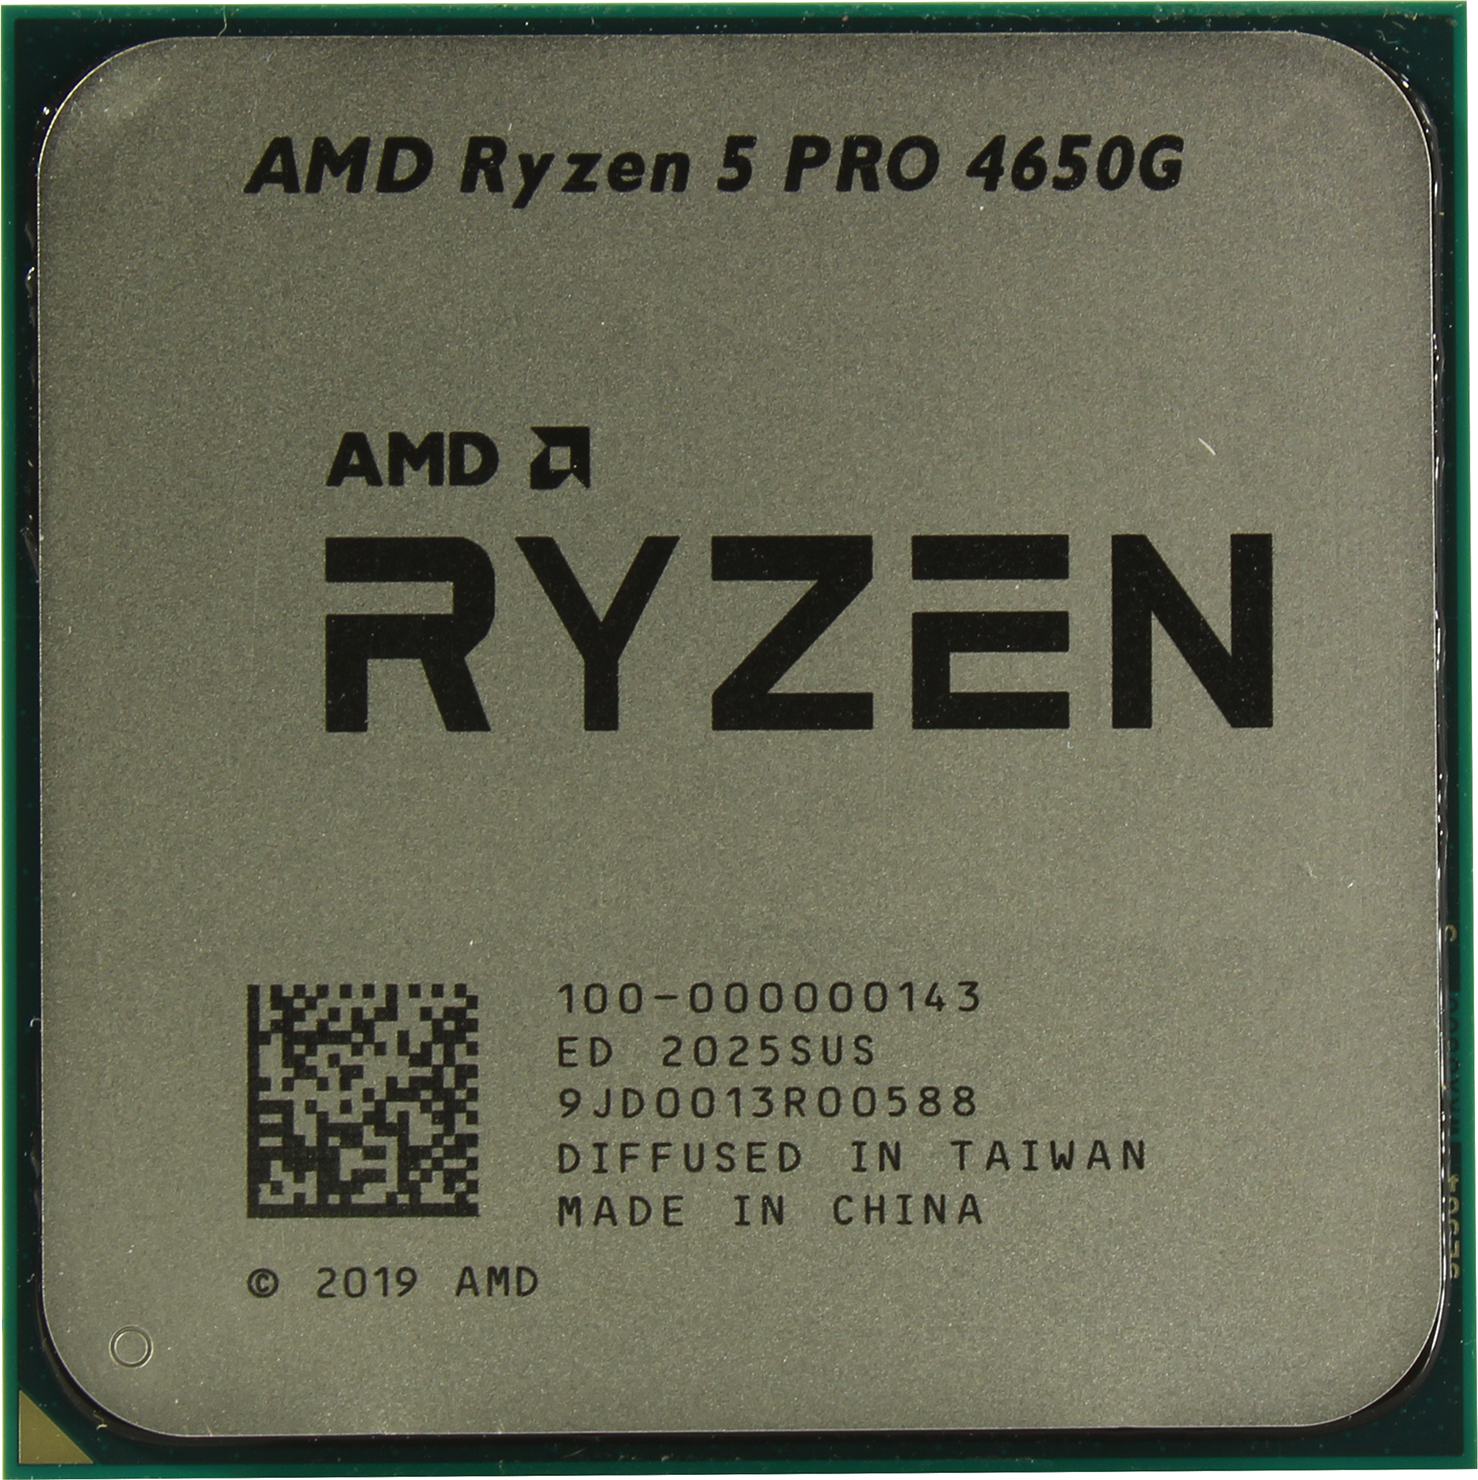  AMD Ryzen 5 PRO 4650G (100-000000143)